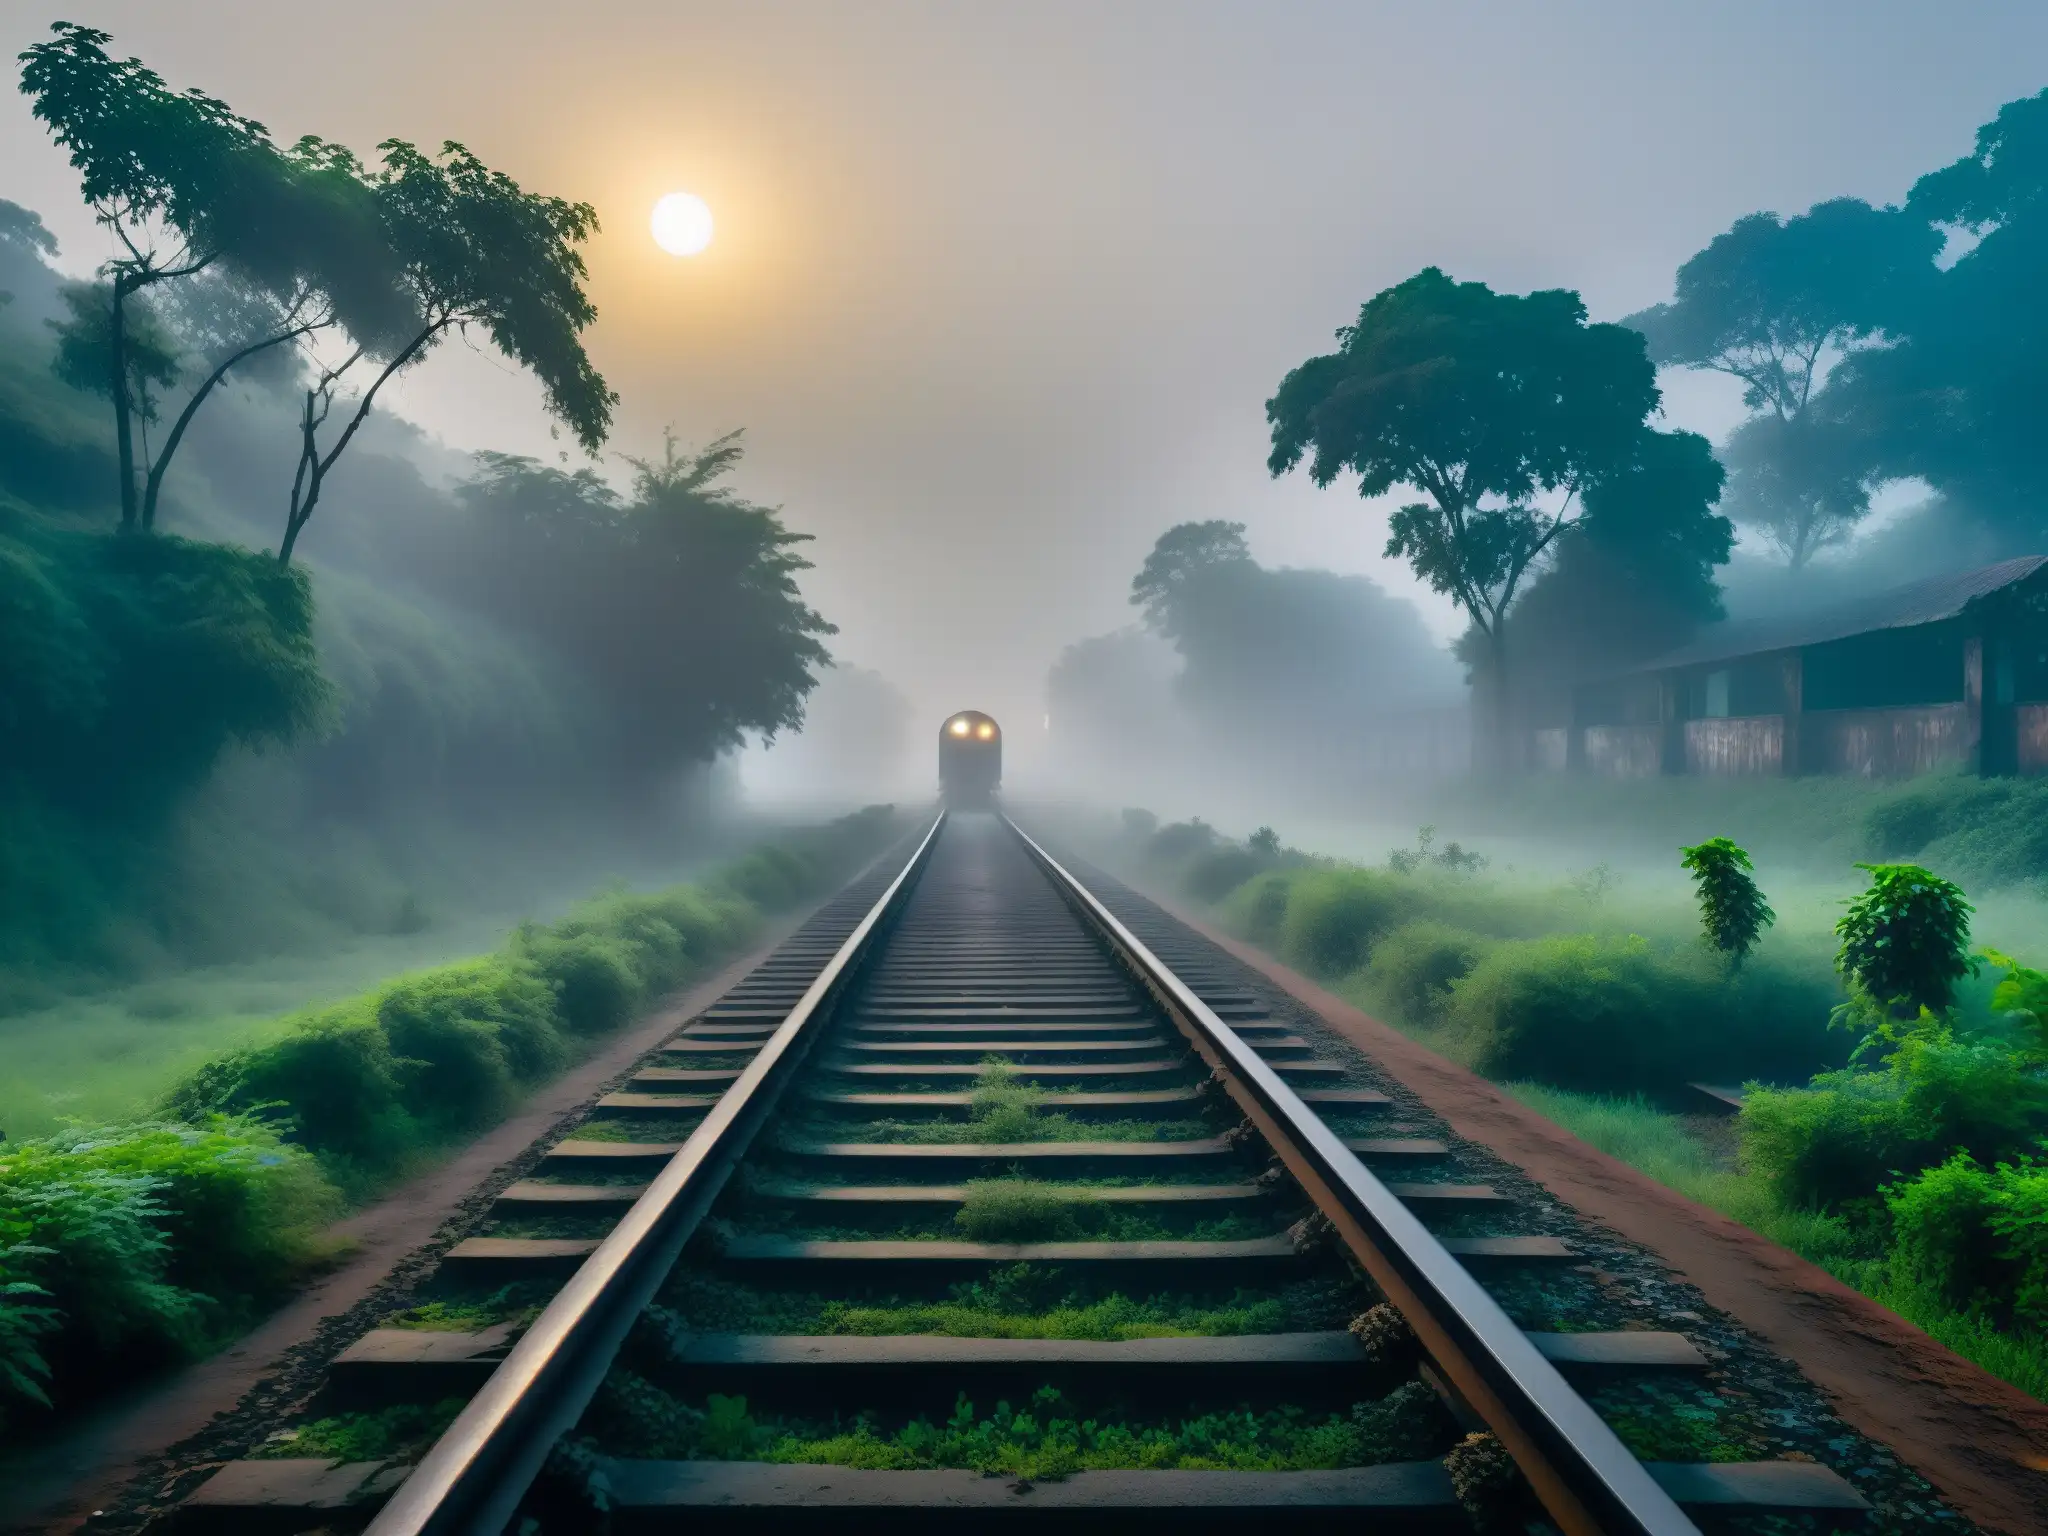 Un antiguo tren abandonado se desvanece en la niebla de una noche misteriosa en India, rodeado de mitos y leyendas sobre un tren fantasma